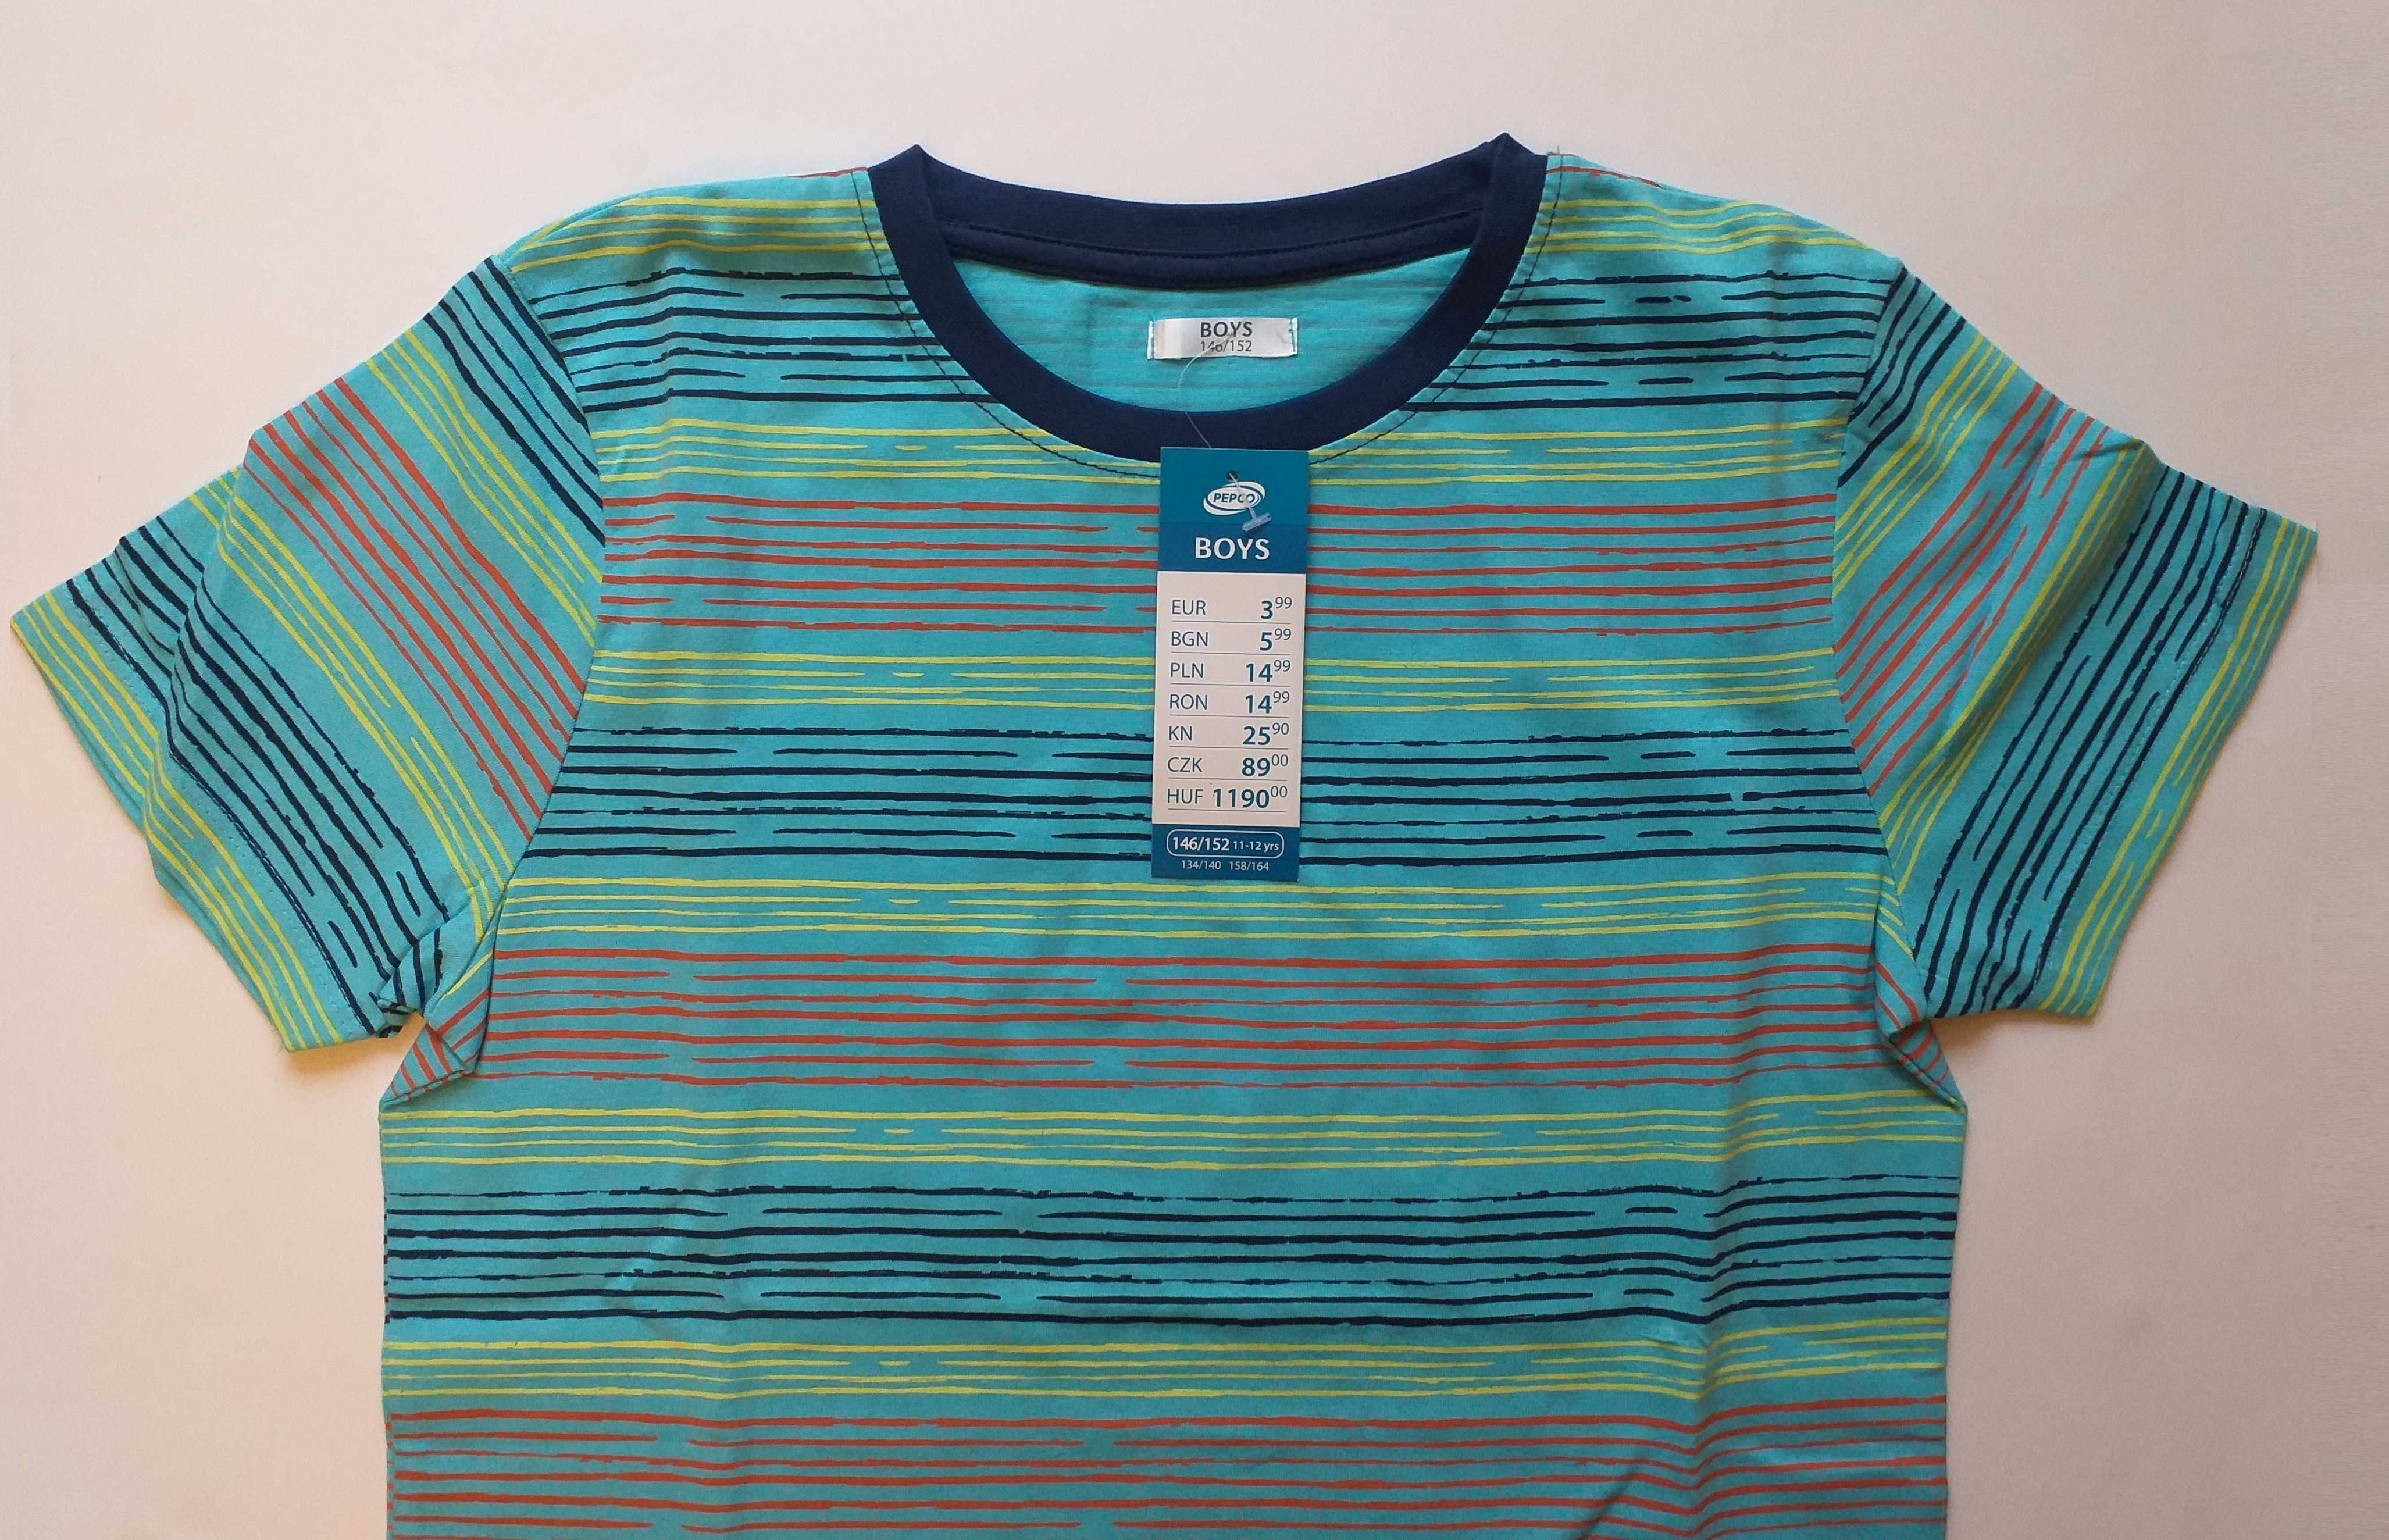 Koszulka t-shirt, niebieska w paski, dla chłopca, 146/152, ** NOWA **